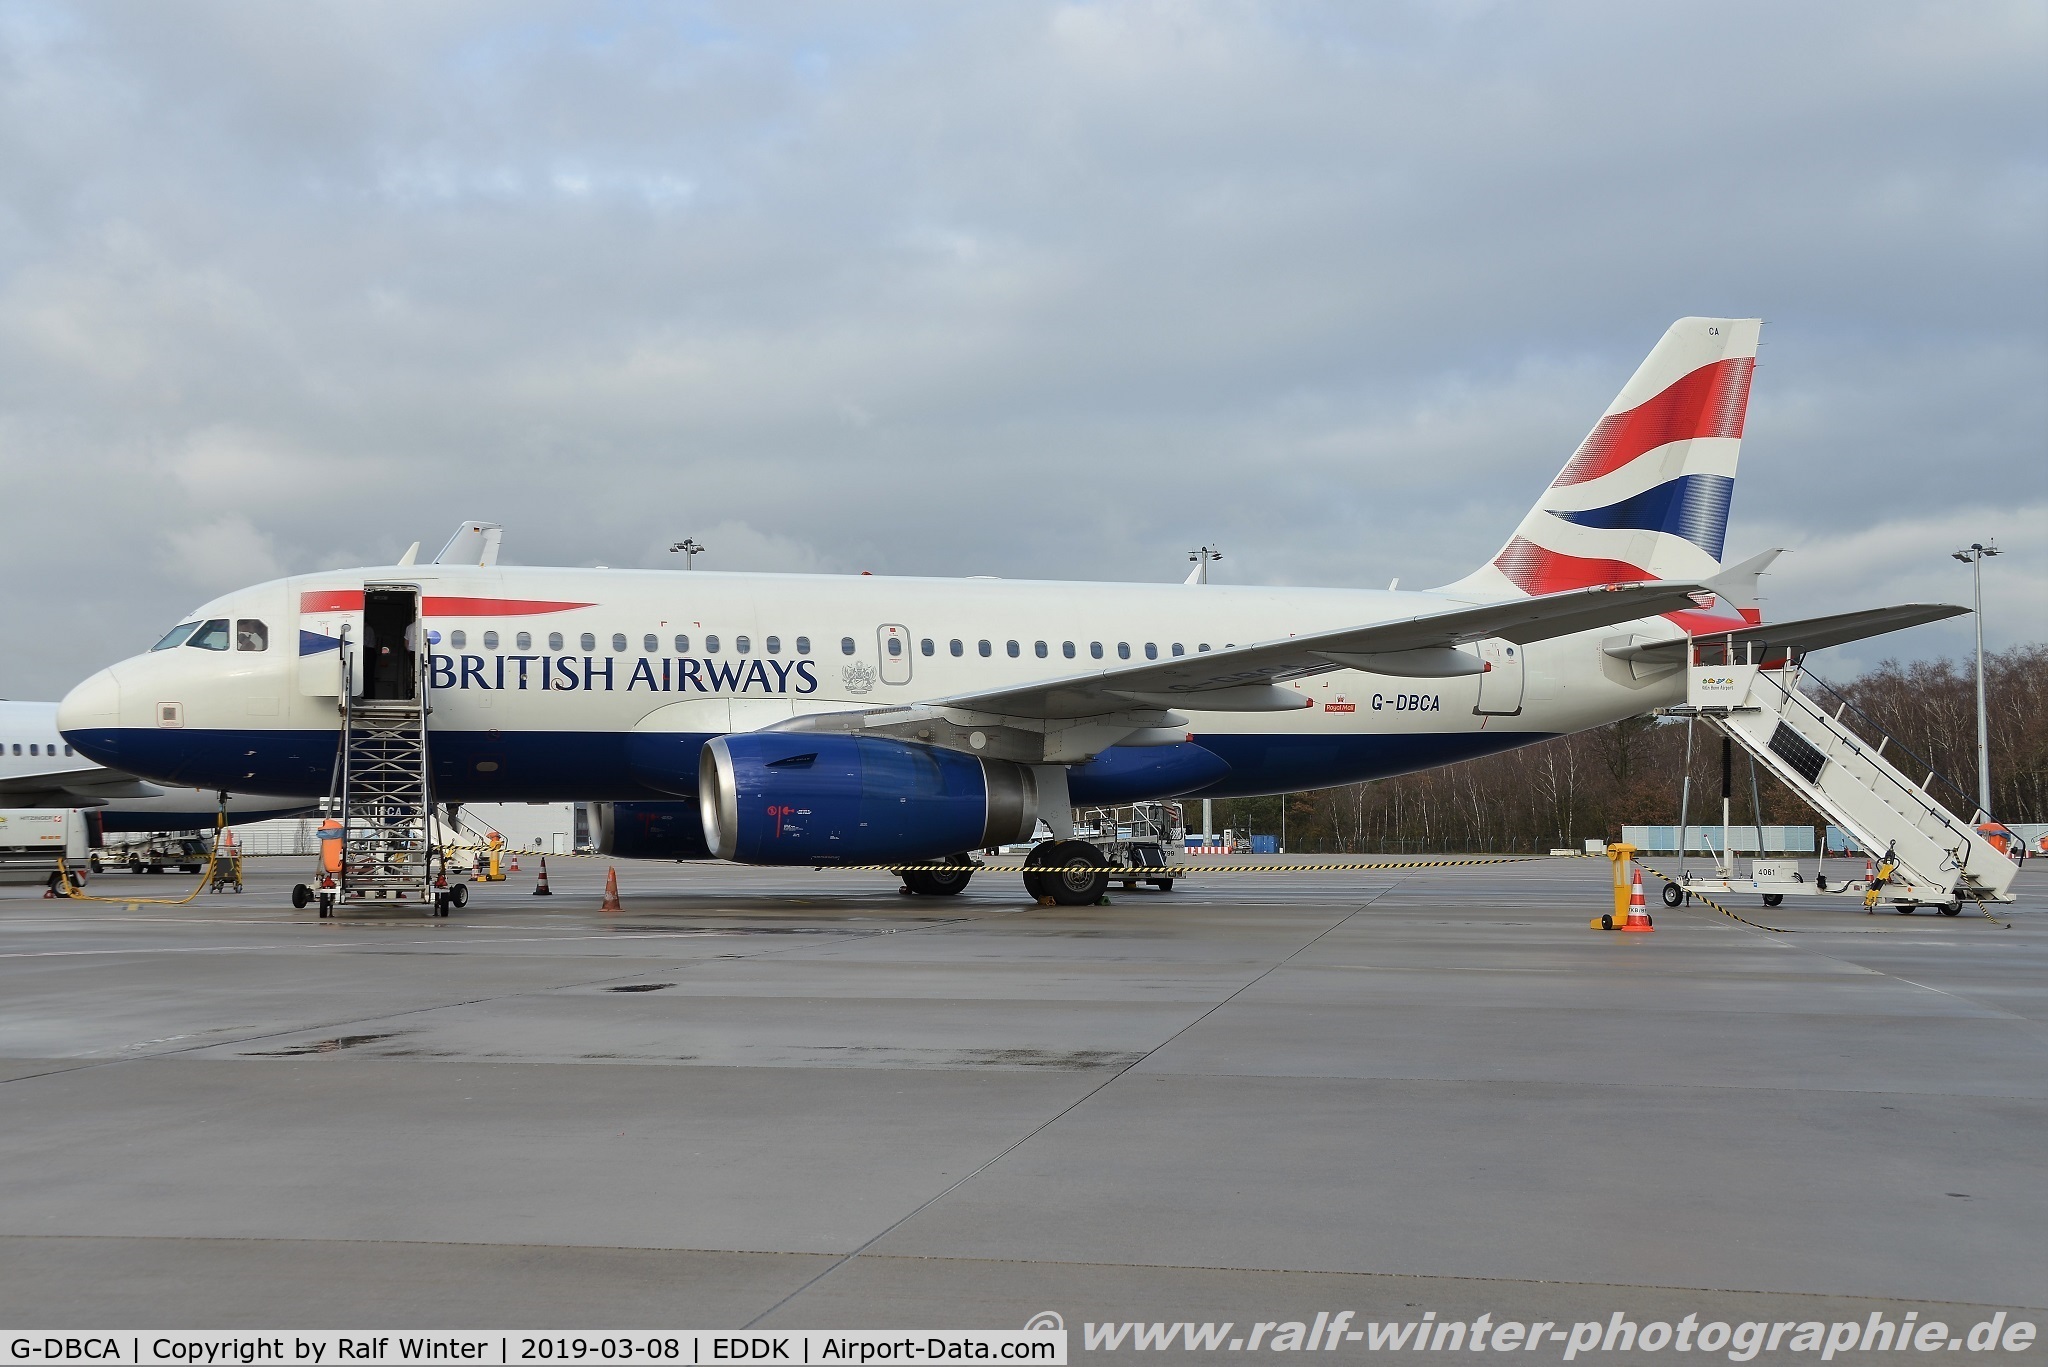 G-DBCA, 2004 Airbus A319-131 C/N 2098, Airbus A319-131 - BA BAW British Airways - 2098 - G-DBCA - 08.03.2019 - CGN